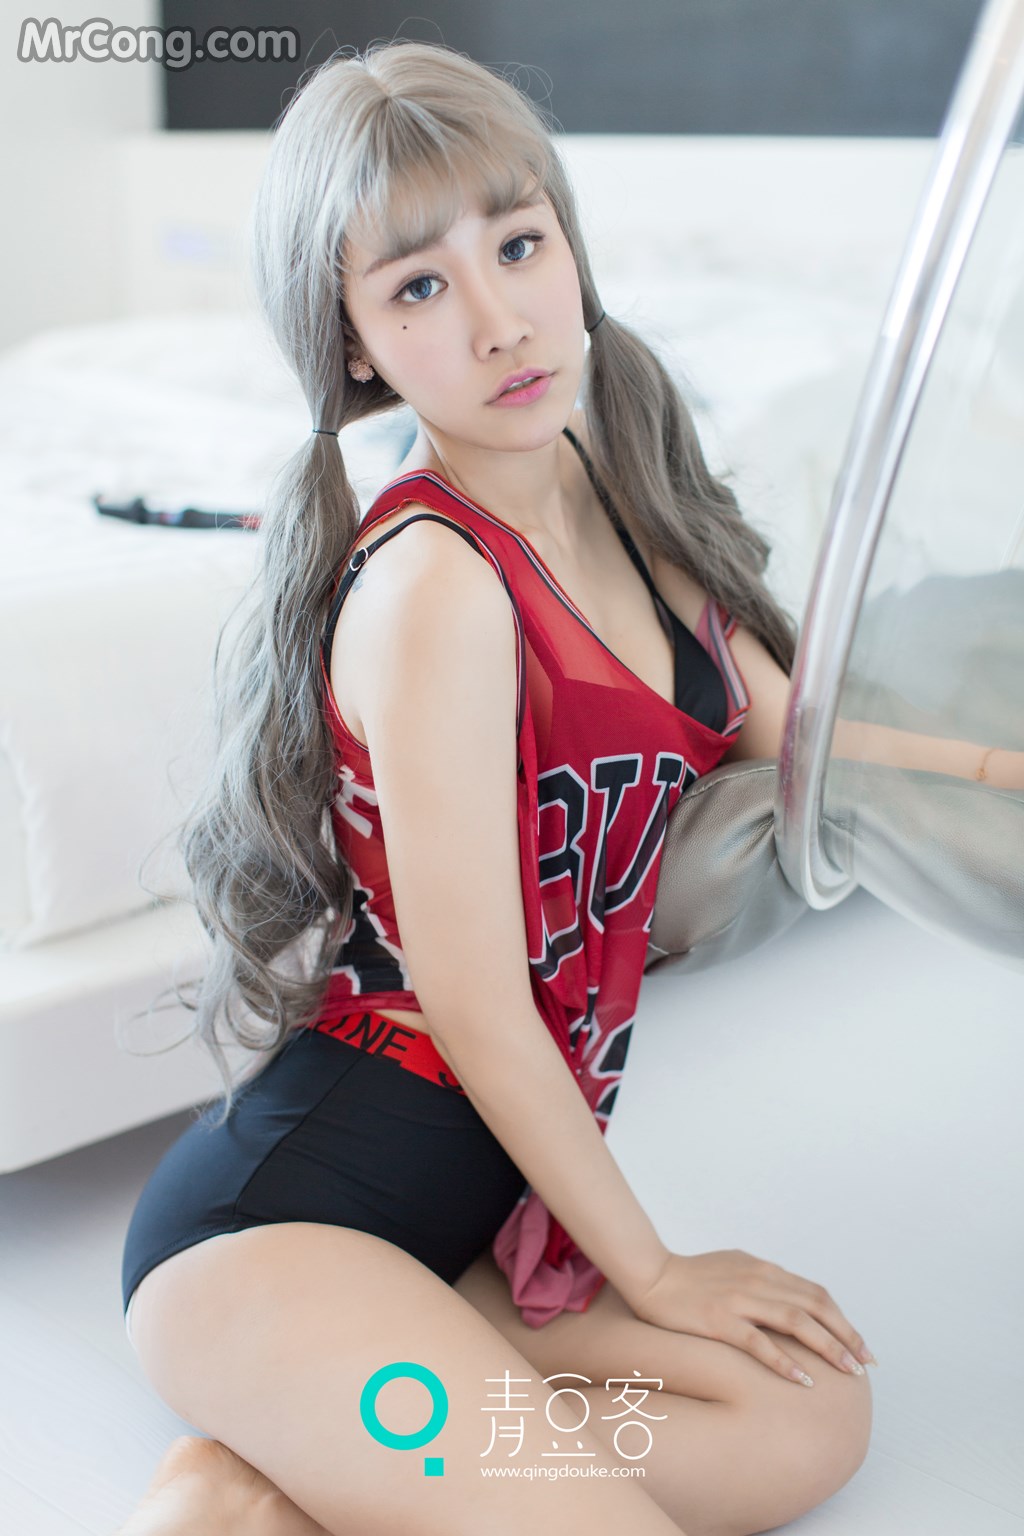 QingDouKe 2016-12-11: Model Mei Xin (美 盺 Yumi) (44 photos)